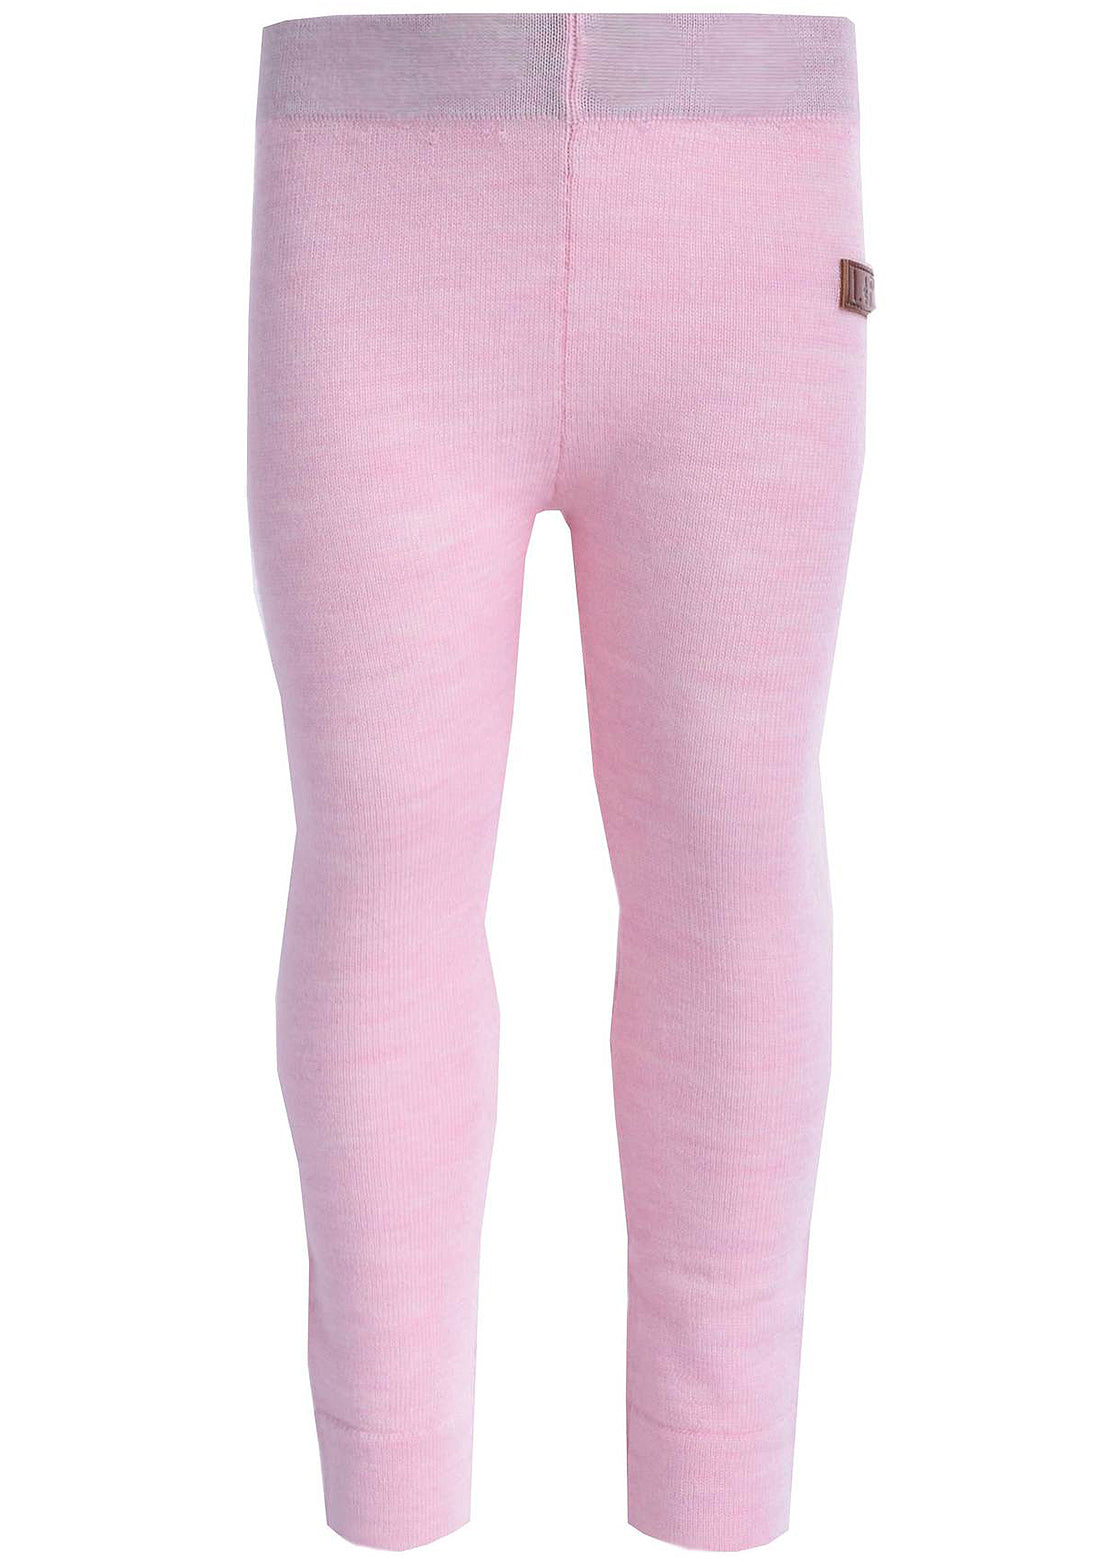 L&amp;P Toddler Merino Wool Thermal Underwear Set Heather Pink